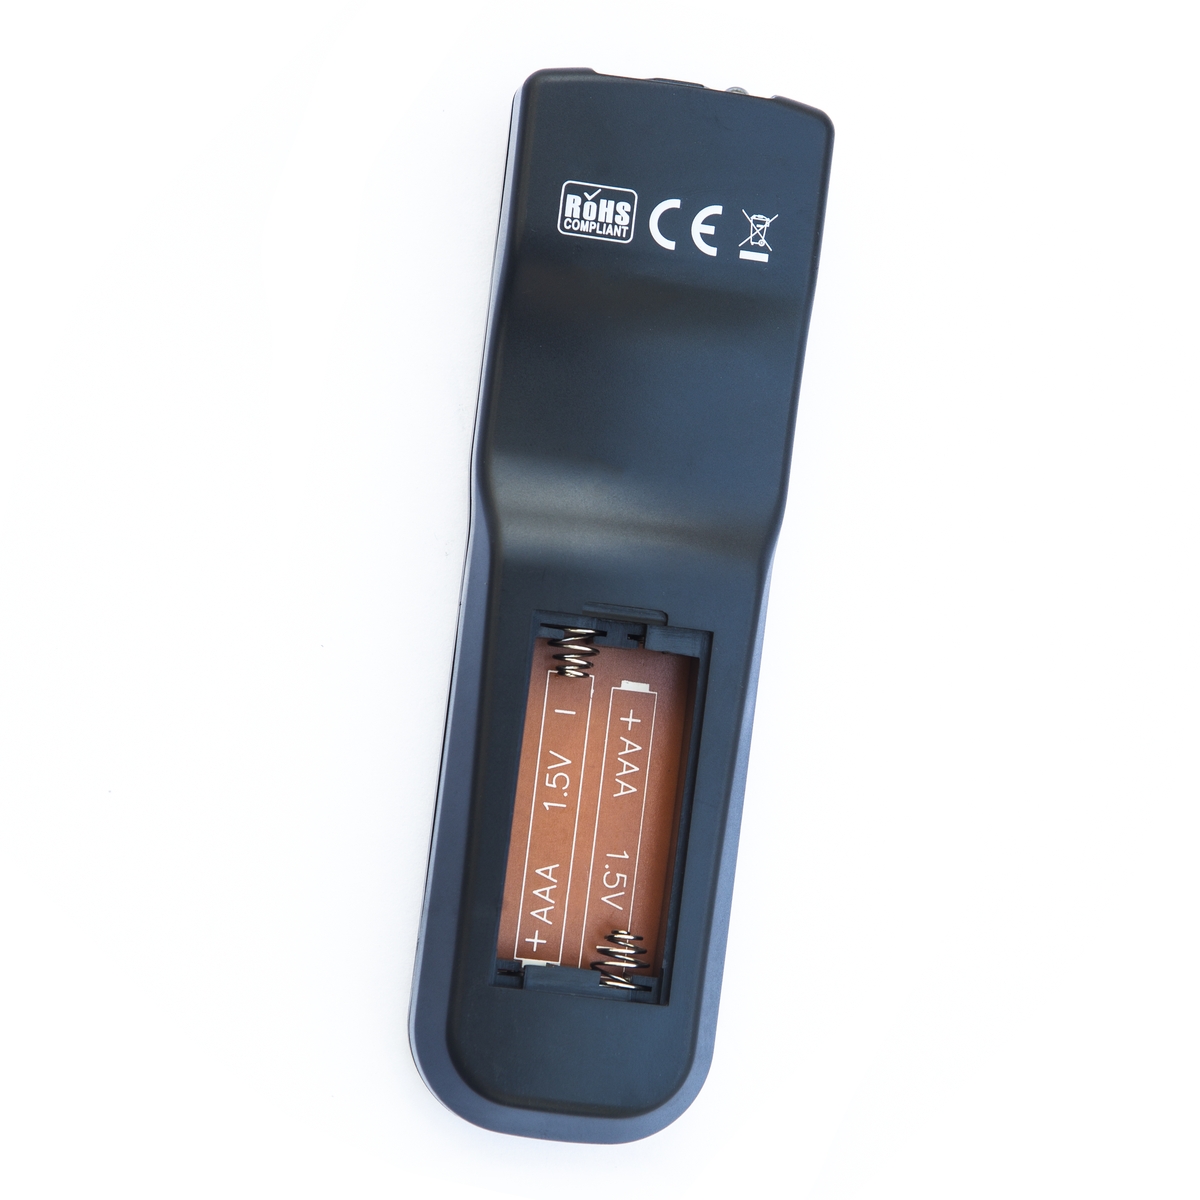 Remote Control for Dell S510 Projector